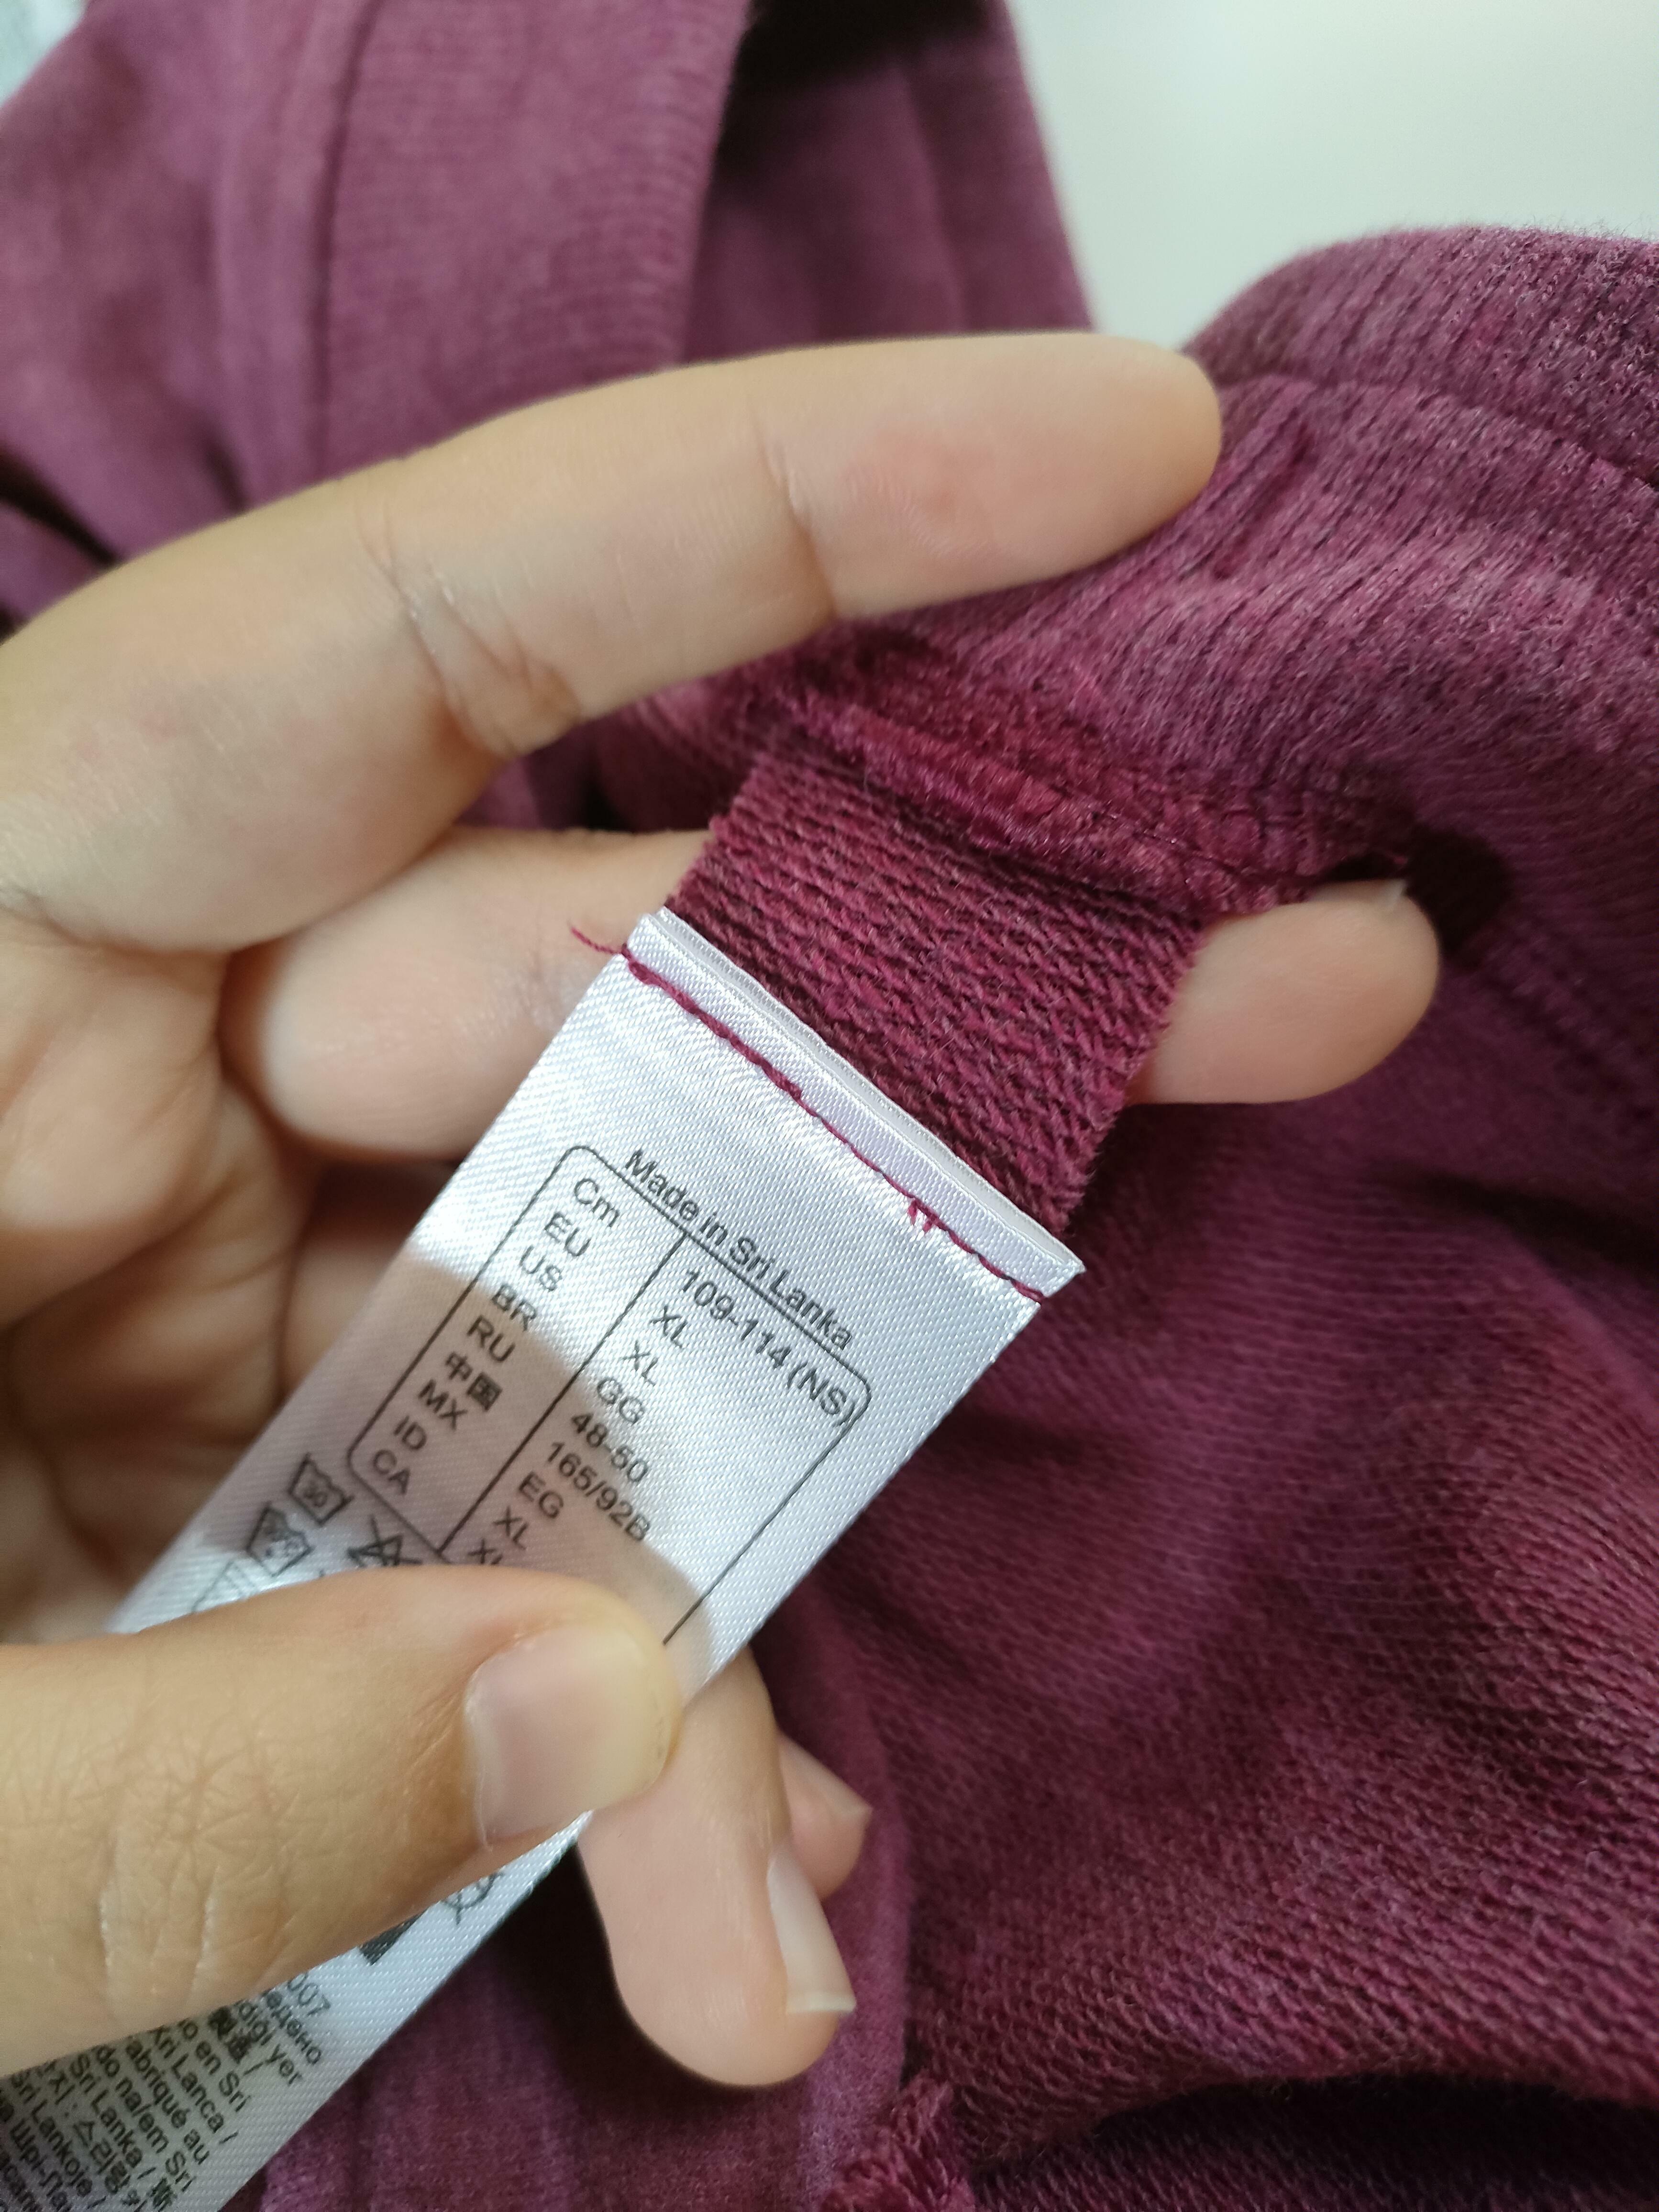 Decathlon coud maintenant les étiquettes sur de petits bouts de tissu plutôt que sur le vêtement lui-même, de sorte qu'il est plus facile de les couper et qu'elles ne laissent pas de résidus qui démangent.